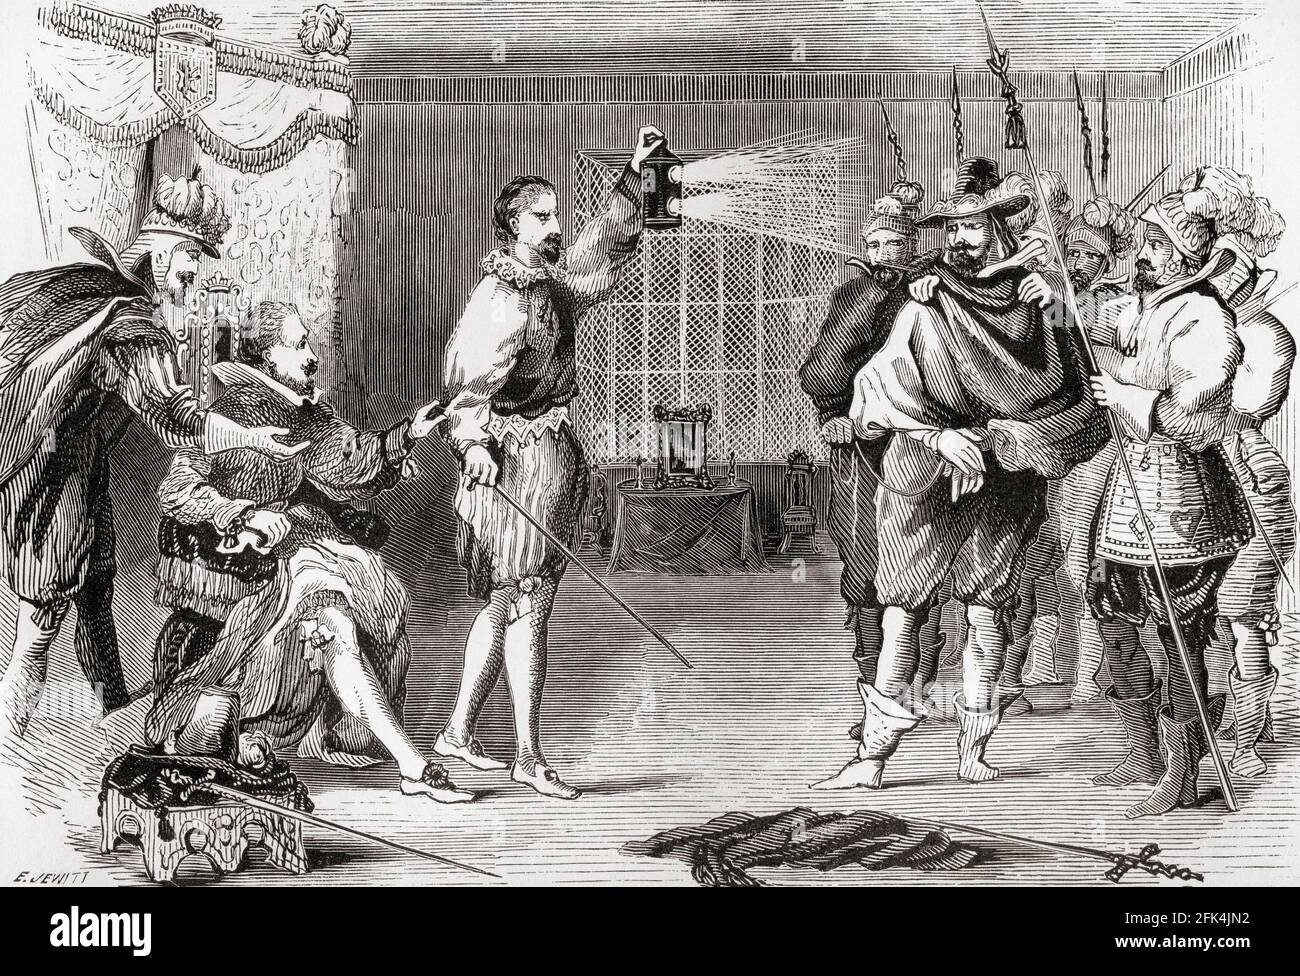 Le tracé Gunpowder. Guy Fawkes interrogé par James I et son conseil dans le lit du roi, Whitehall. Guy Fawkes, 1570 – 1606, alias Guido Fawkes, membre d'un groupe de catholiques anglais de la province qui ont pris part à la parcelle de Gunpoder de 1605, ou à la trahison jésuite, une tentative d'assassinat infructueuse contre le roi James I d'Angleterre et VI d'Écosse. Le complot était de faire exploser la Chambre des Lords lors de l'ouverture d'État du Parlement d'Angleterre le 5 novembre 1605. De l'Histoire du progrès en Grande-Bretagne, publié en 1866. Banque D'Images